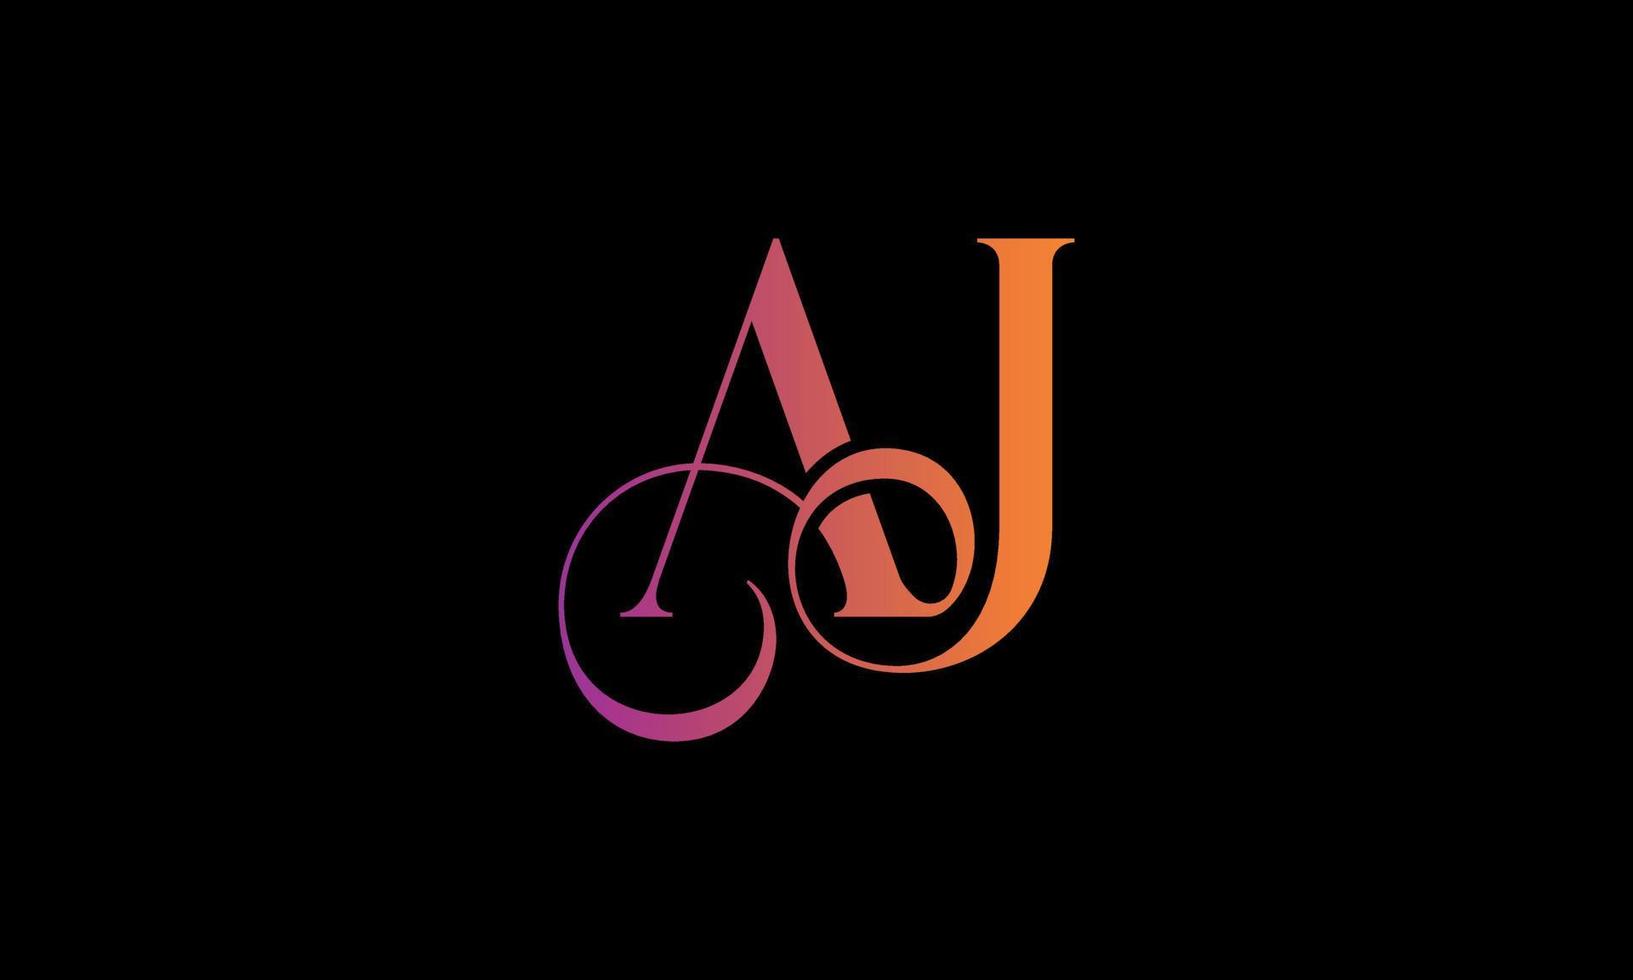 eerste brief aj logo. aj voorraad brief logo ontwerp pro vector sjabloon.